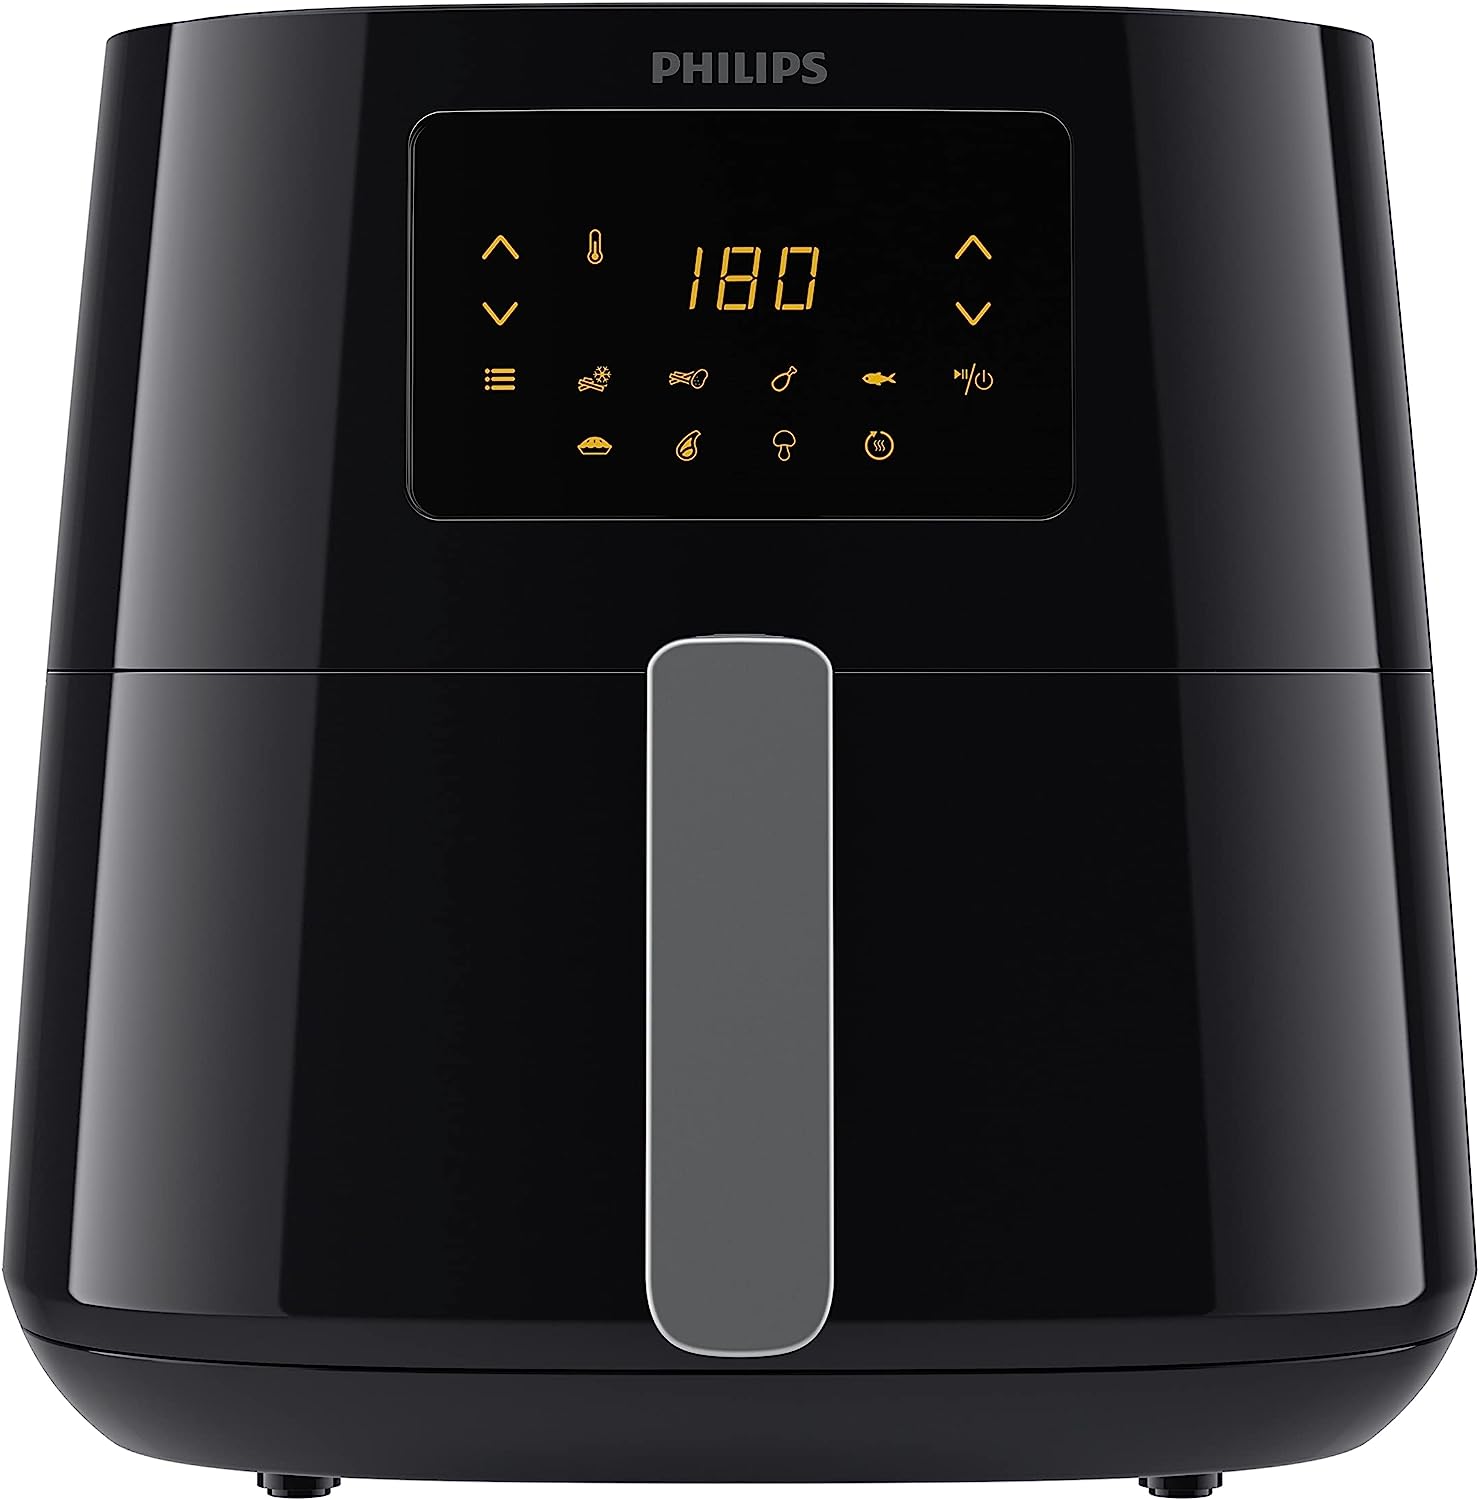 SCENDE DI PREZZO la friggitrice ad aria Philips con l'offerta Black Friday